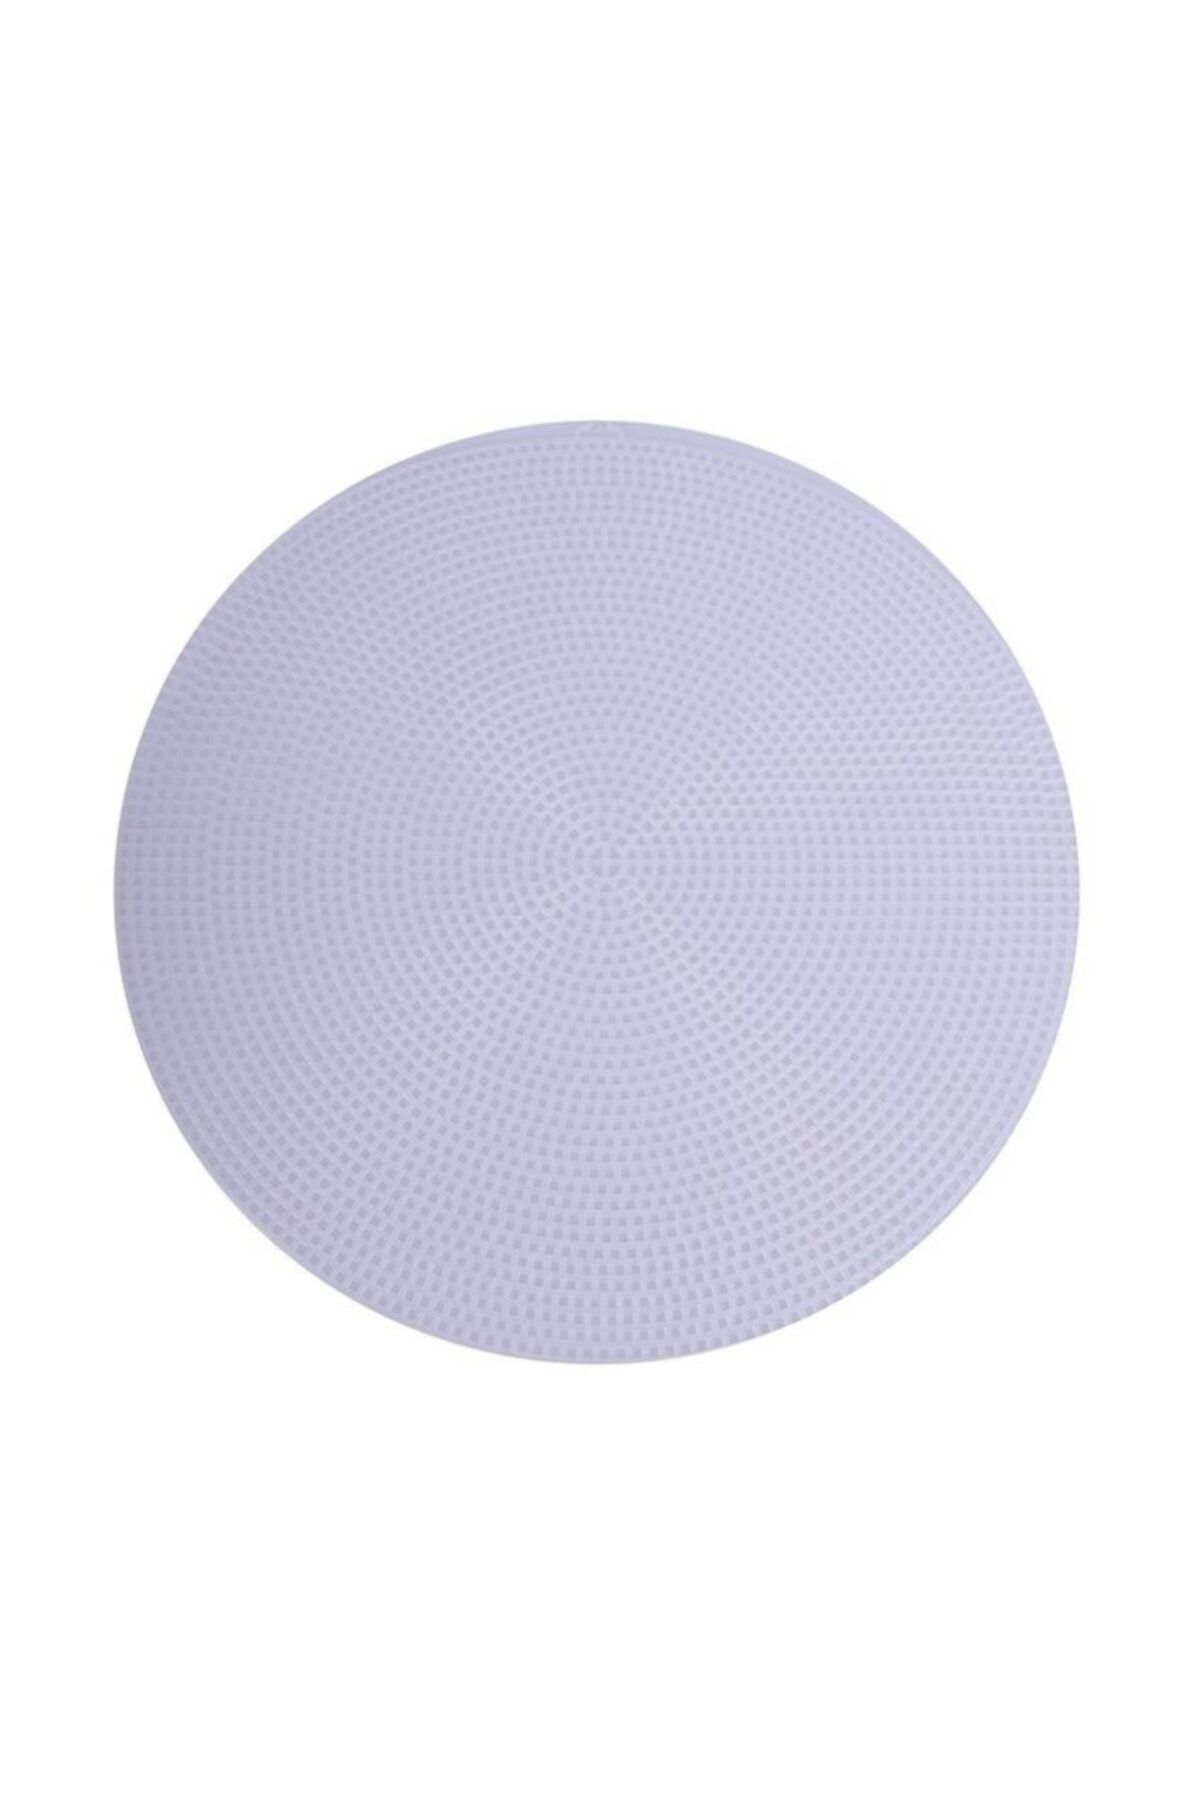 Genel Markalar Mlvx Plastik Çanta Kanvası Yuvarlak 29 Cm Kod/renk: Beyaz Blsm